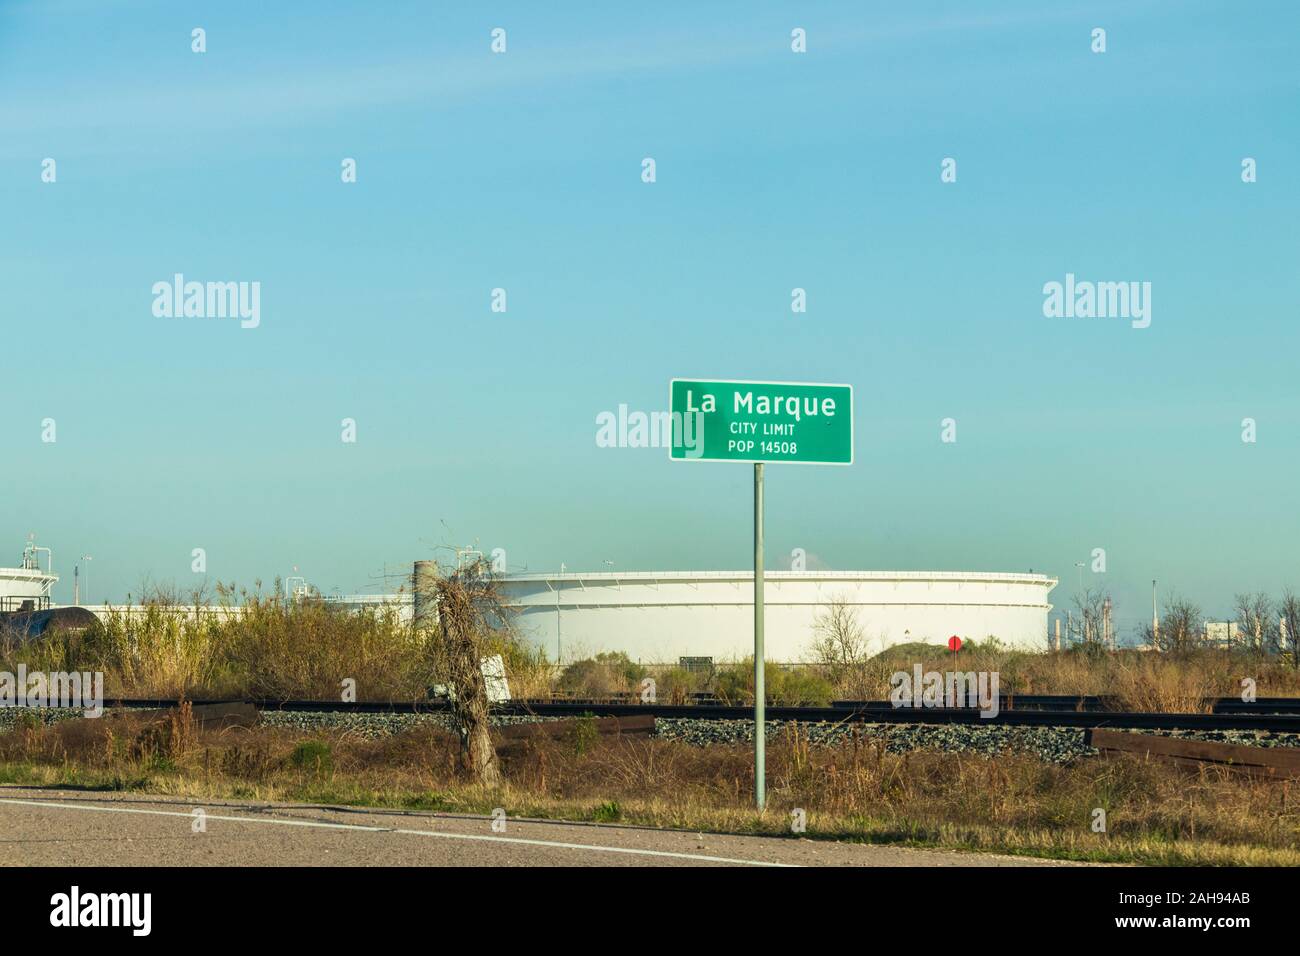 Stadt La Marque auf Texas State Highway 146, Küstenstraße entlang Texas Küste. Stockfoto